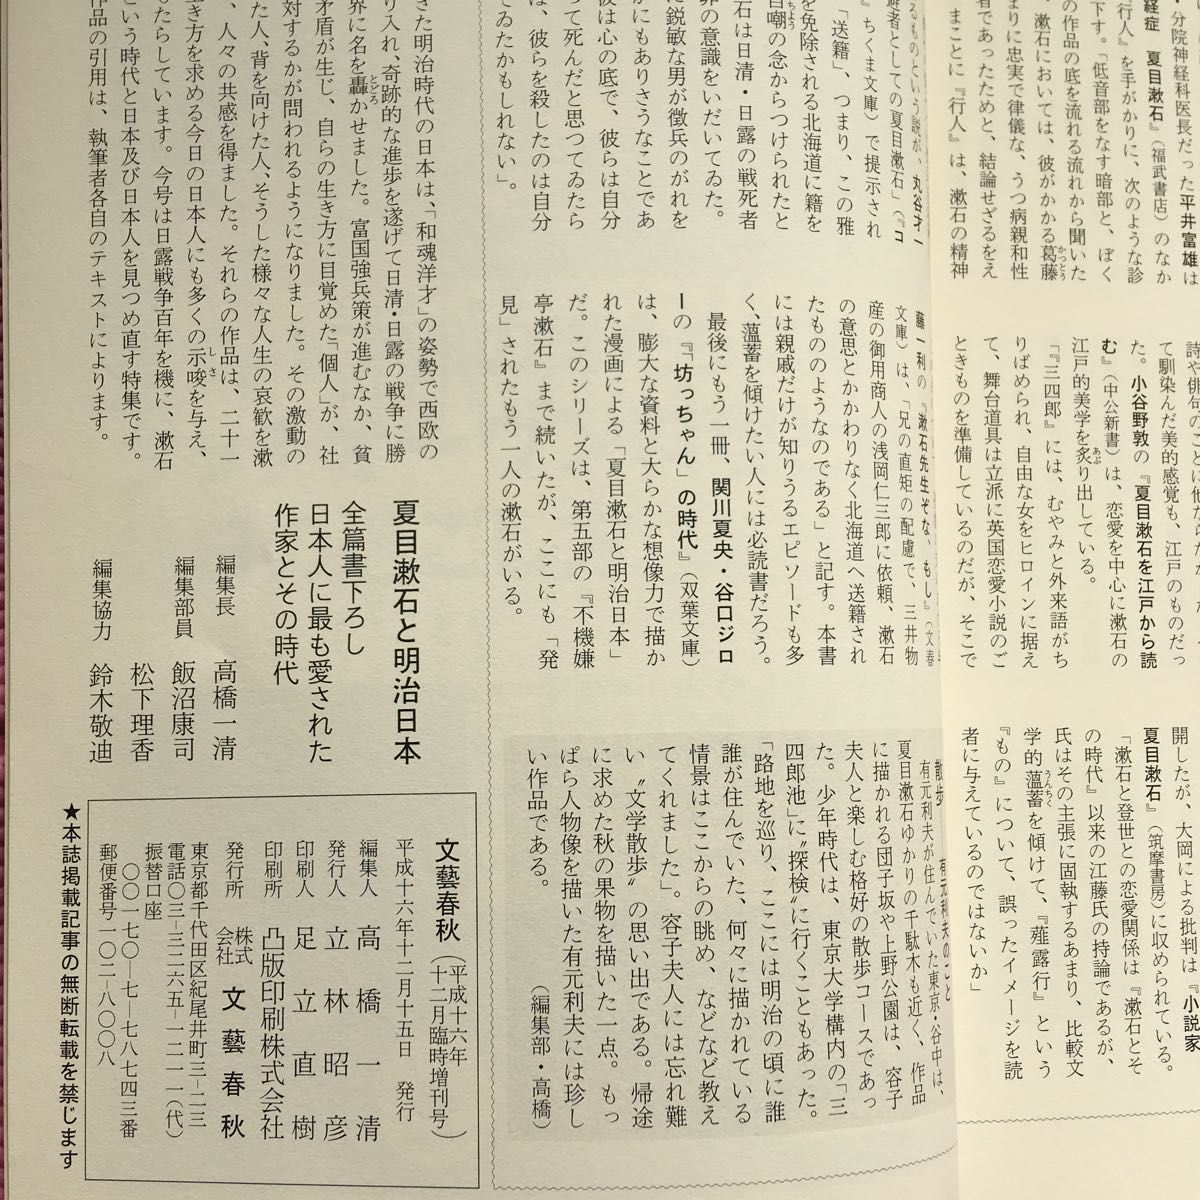 文藝春秋 夏目漱石と明治日本 特別版 2004年12月臨時増刊号